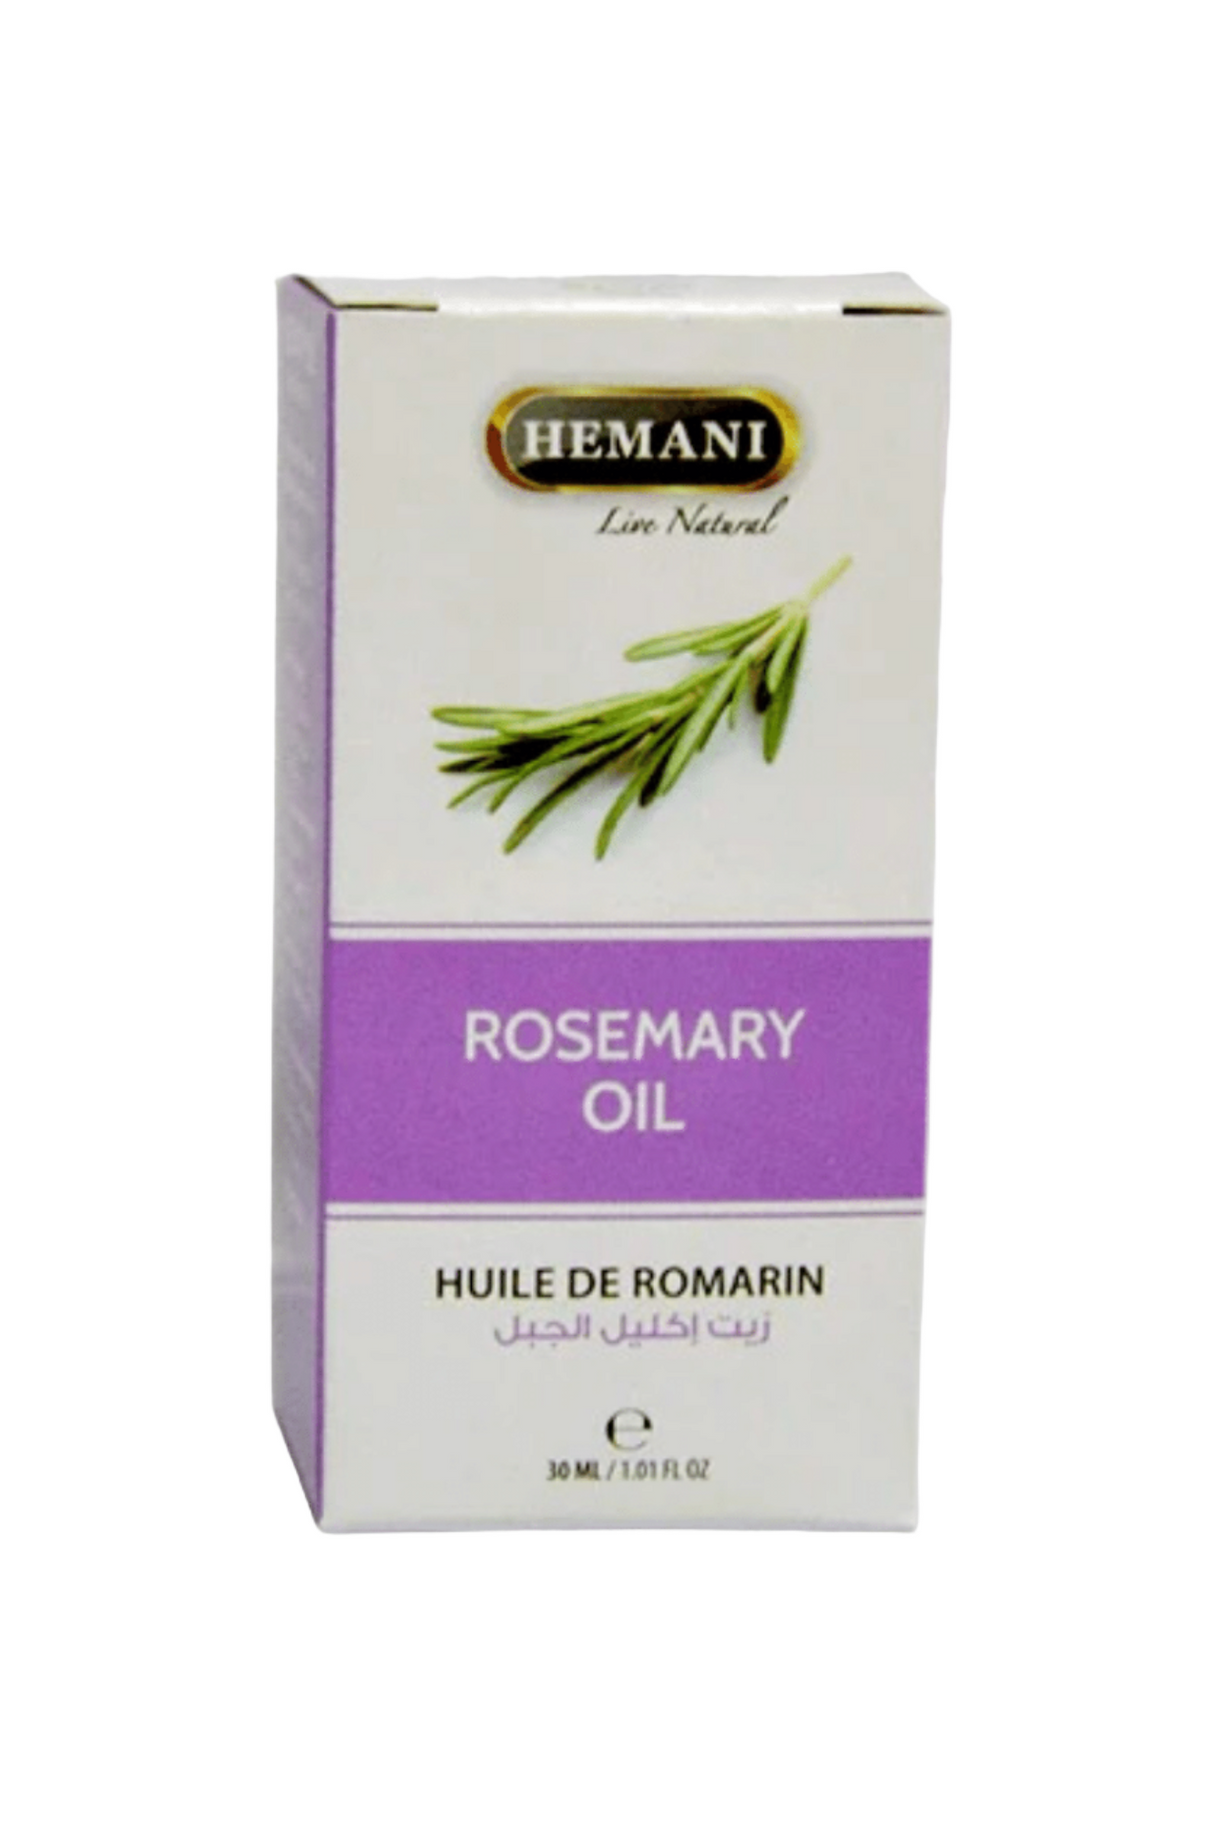 hemani oil rosemary 30ml